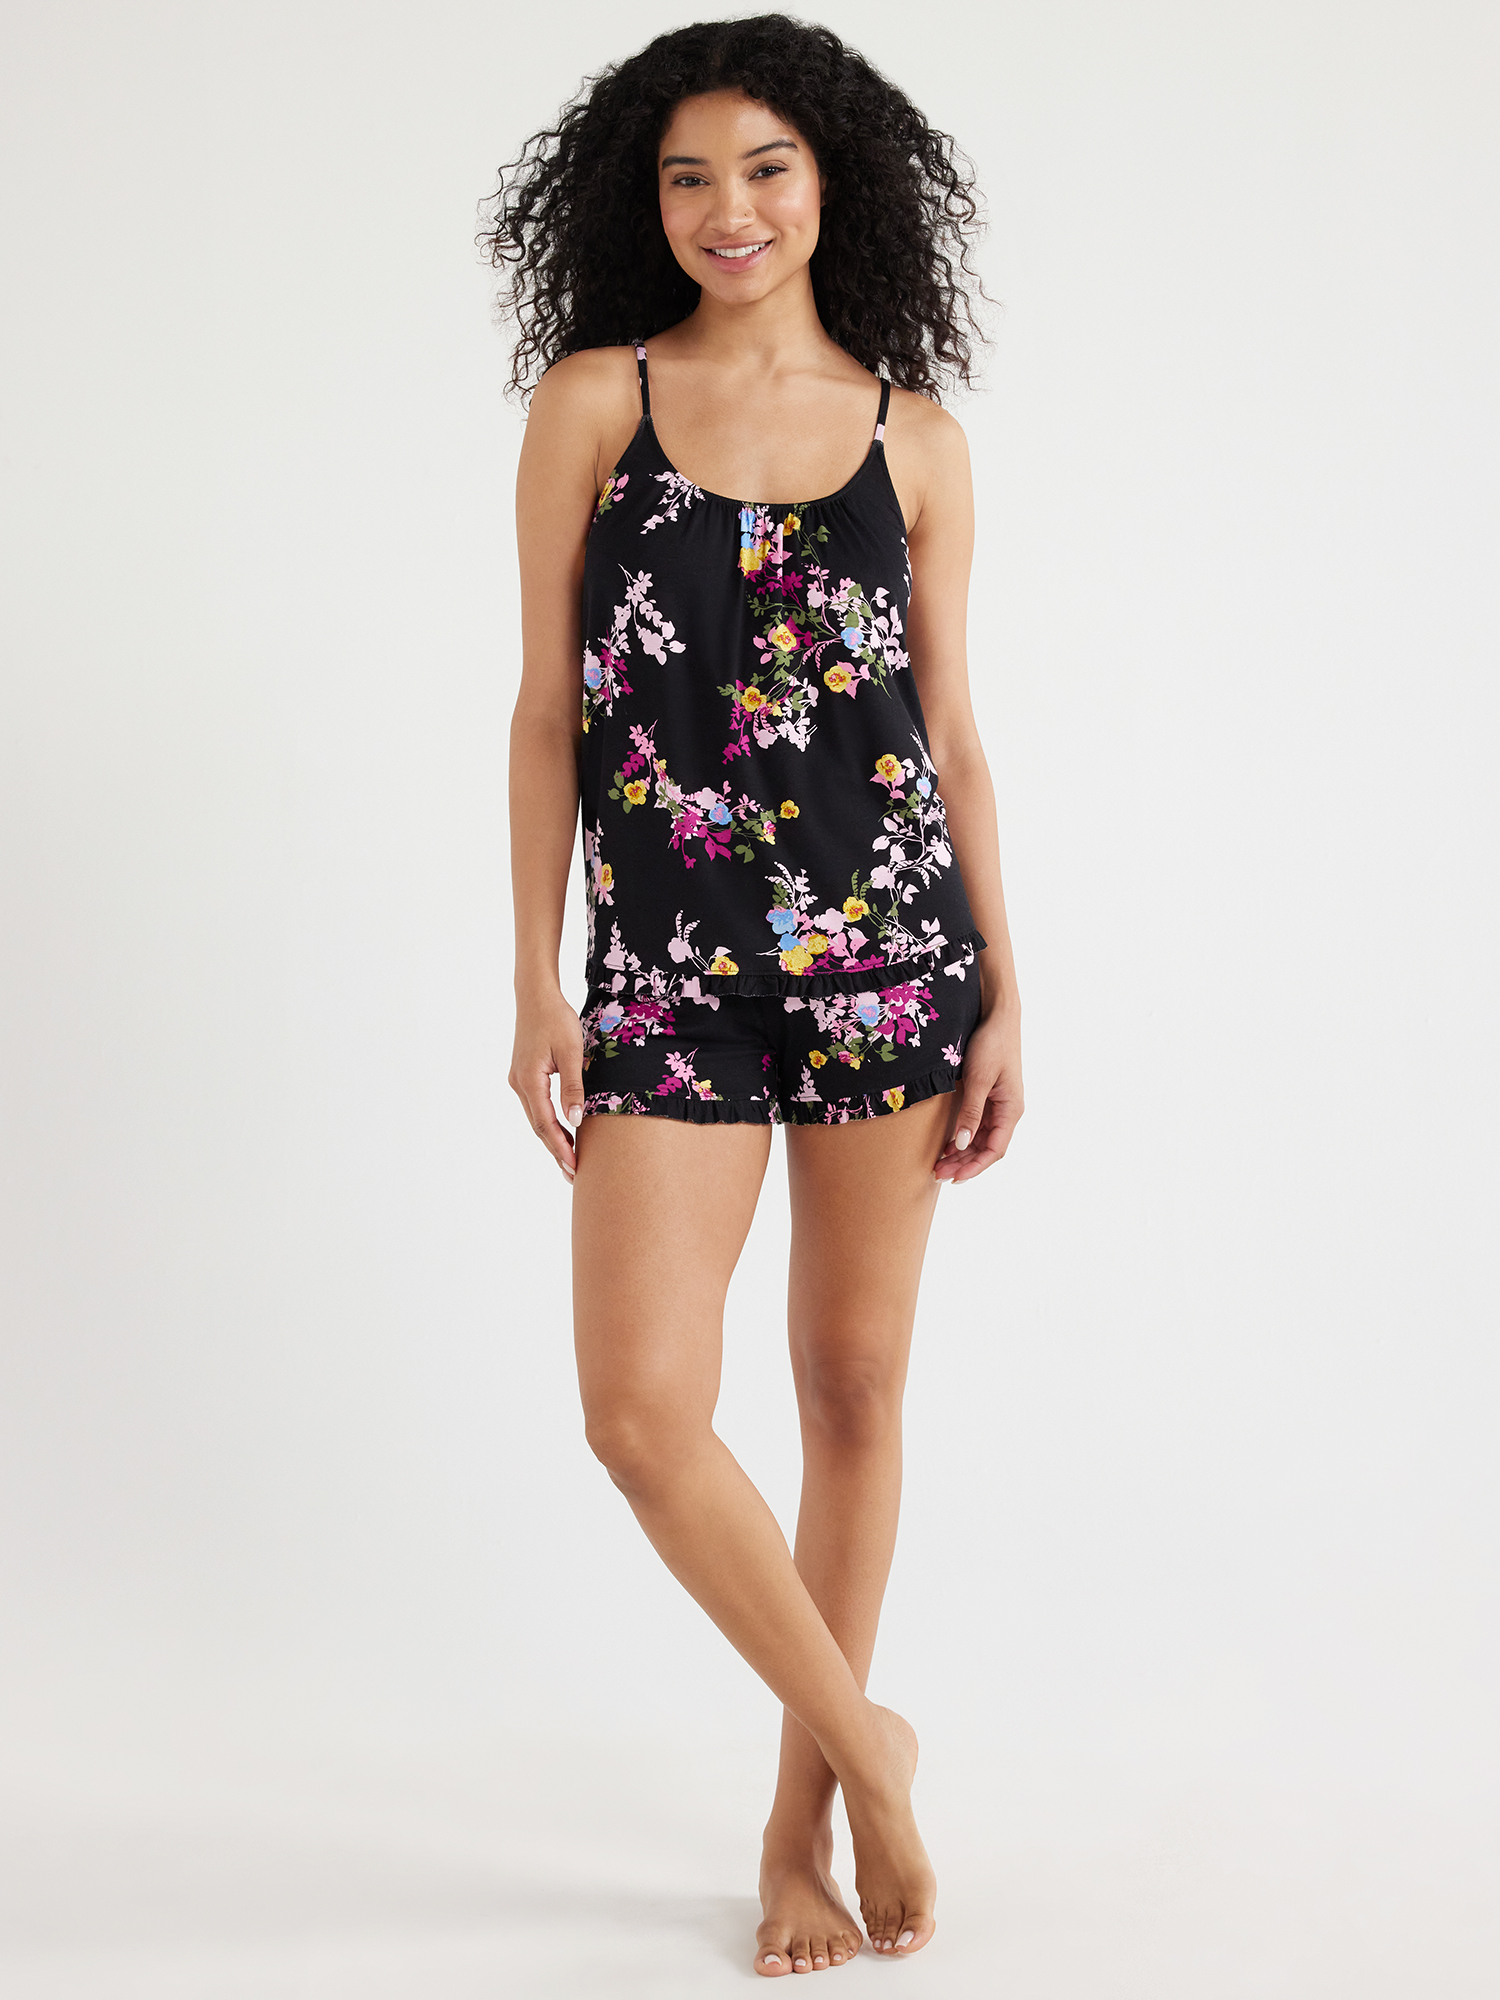 Joyspun Women's Knit Camisole and Shorts Pajama Set, 2-Piece, Sizes S to 3X - image 4 of 7